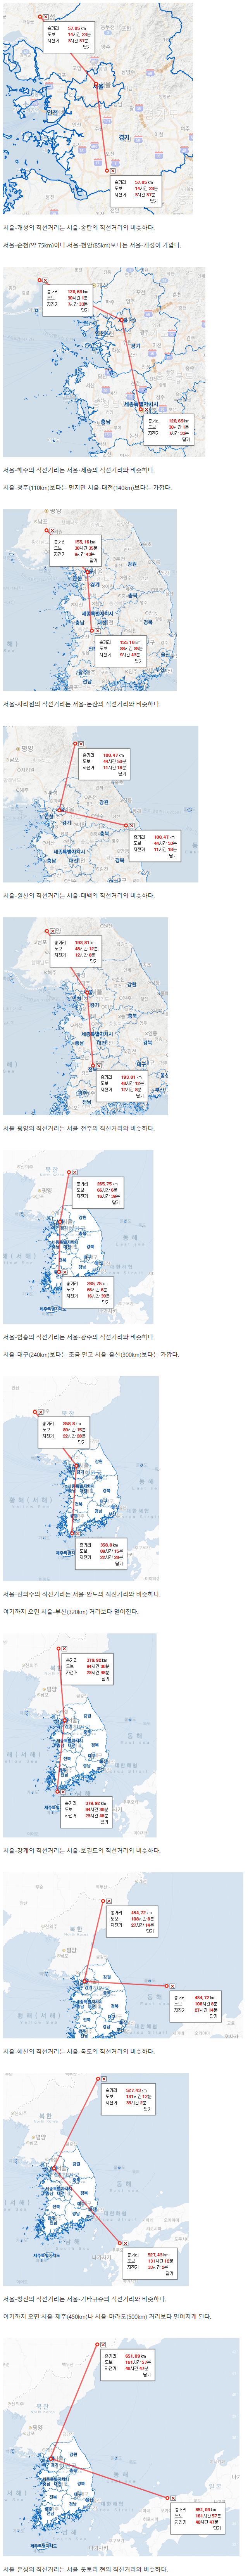 북한의 도시들은 서울에서 얼마나 멀까?